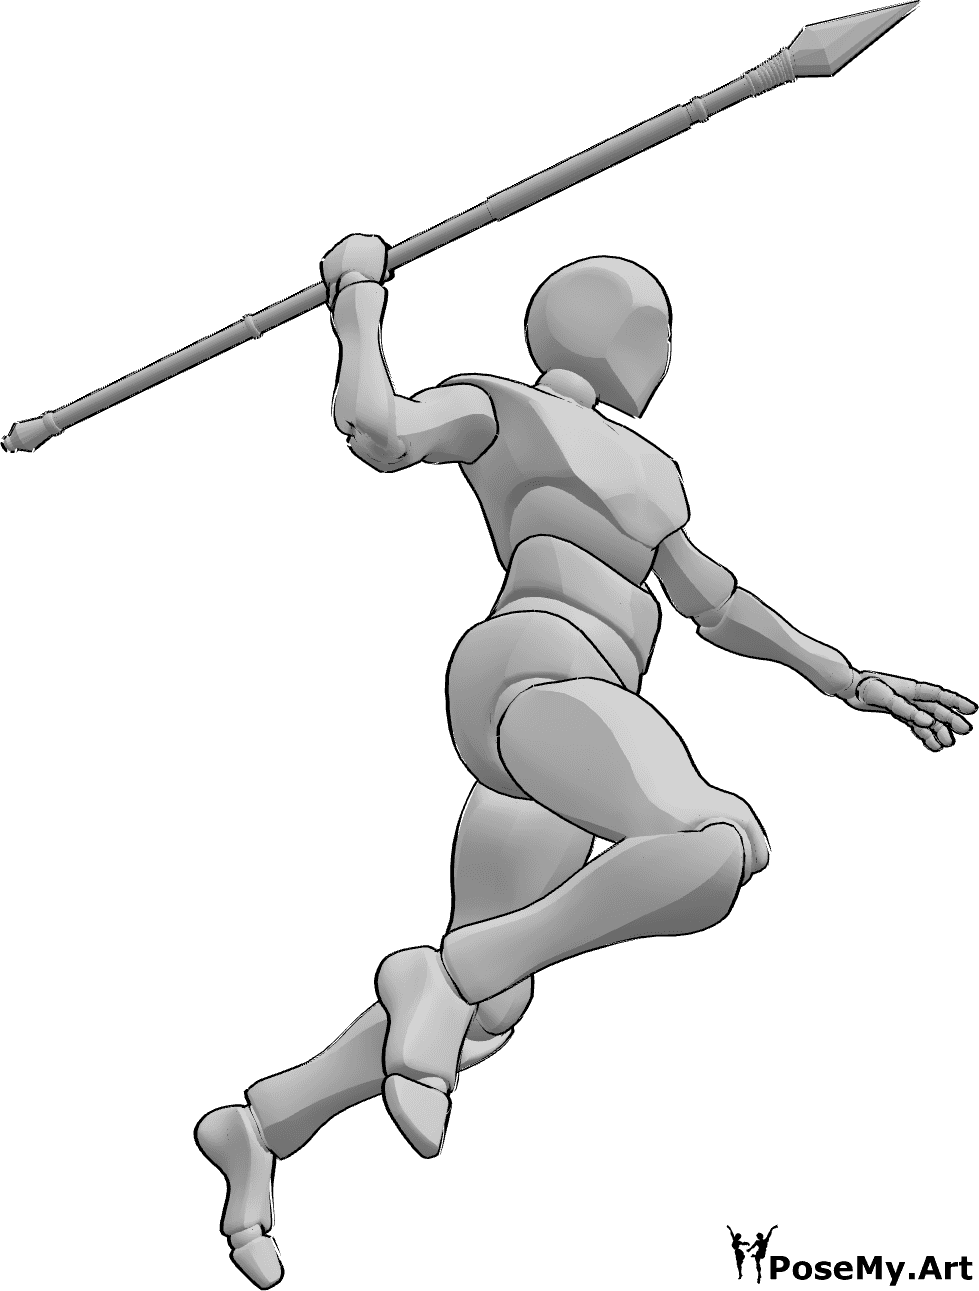 Referência de poses- Pose de salto com lança de arremesso - O macho está a saltar e está prestes a lançar a lança com a mão direita